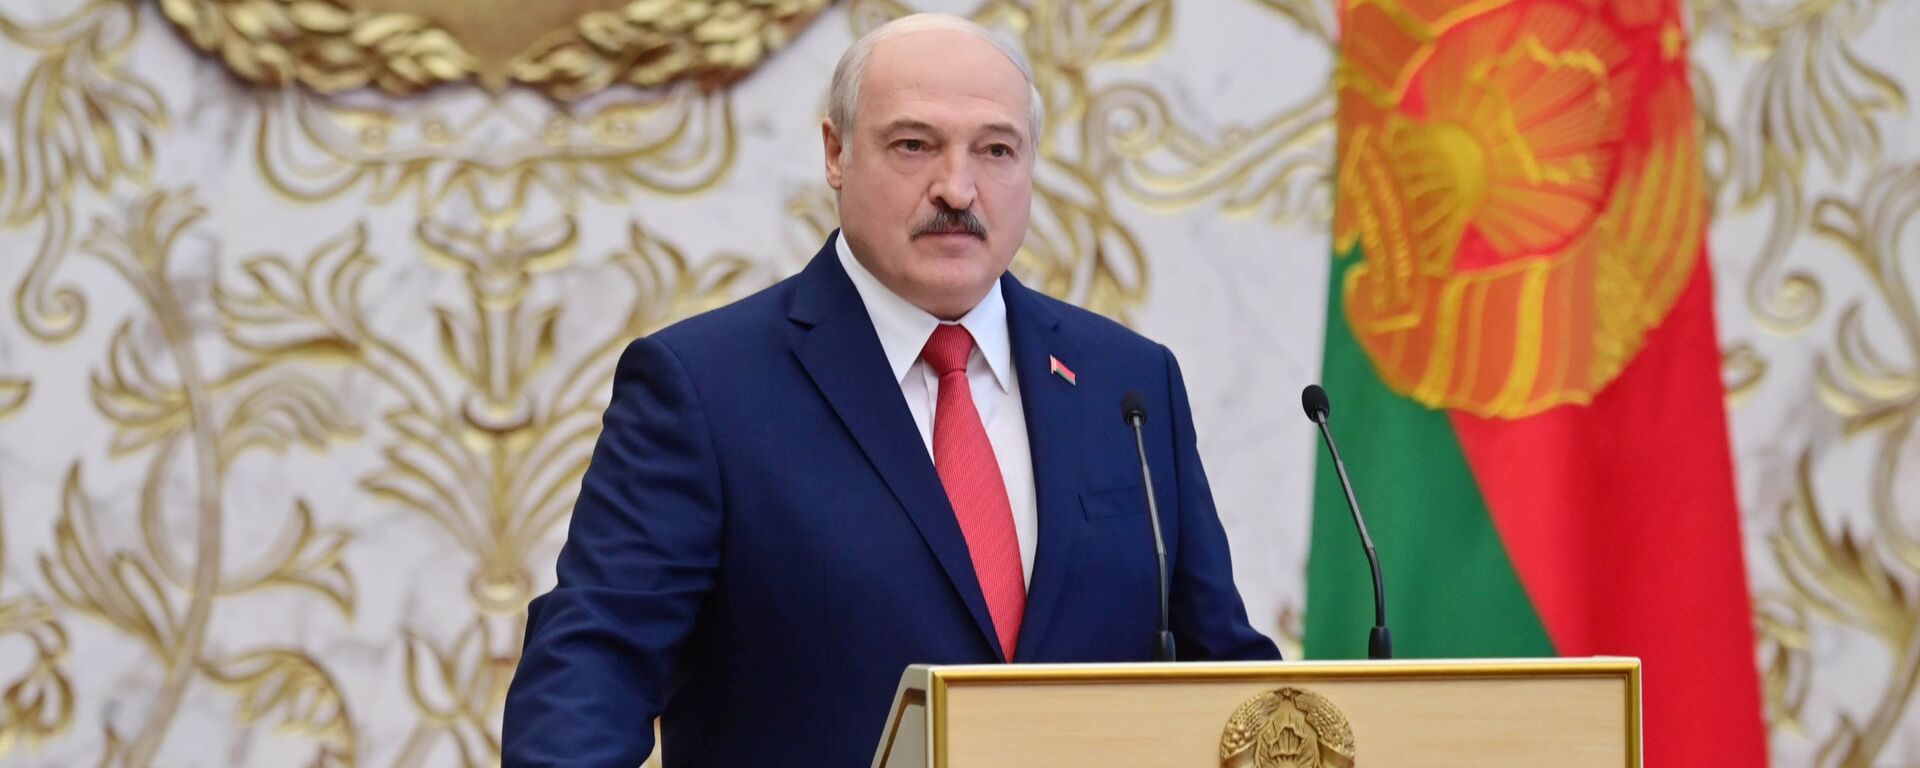 تنصيب الرئيس البيلاروسي ألكسندر لوكاشينكو، ميسنك، بيلاروسيا 23 سبتمبر 2020 - سبوتنيك عربي, 1920, 27.02.2022